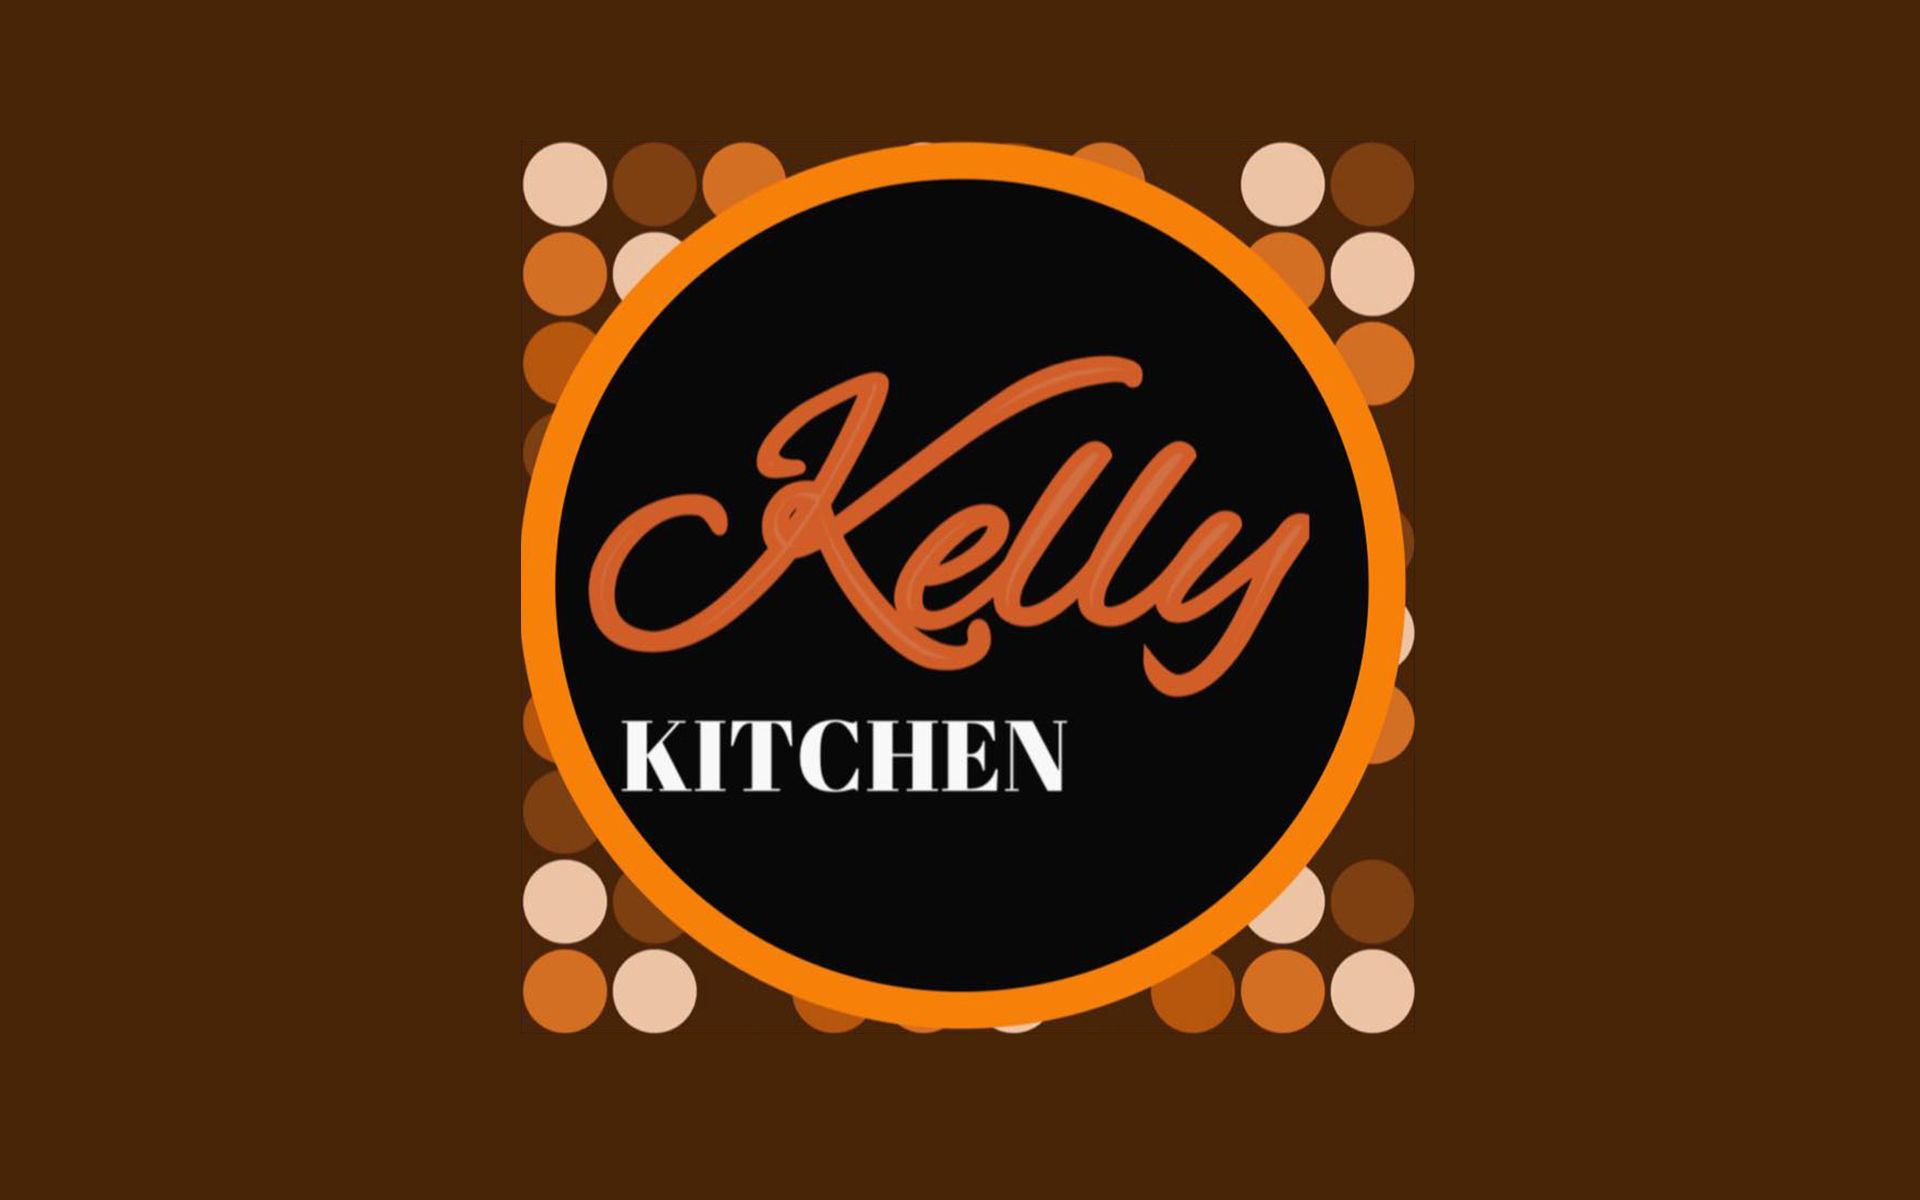 Kelly Kitchen Logo